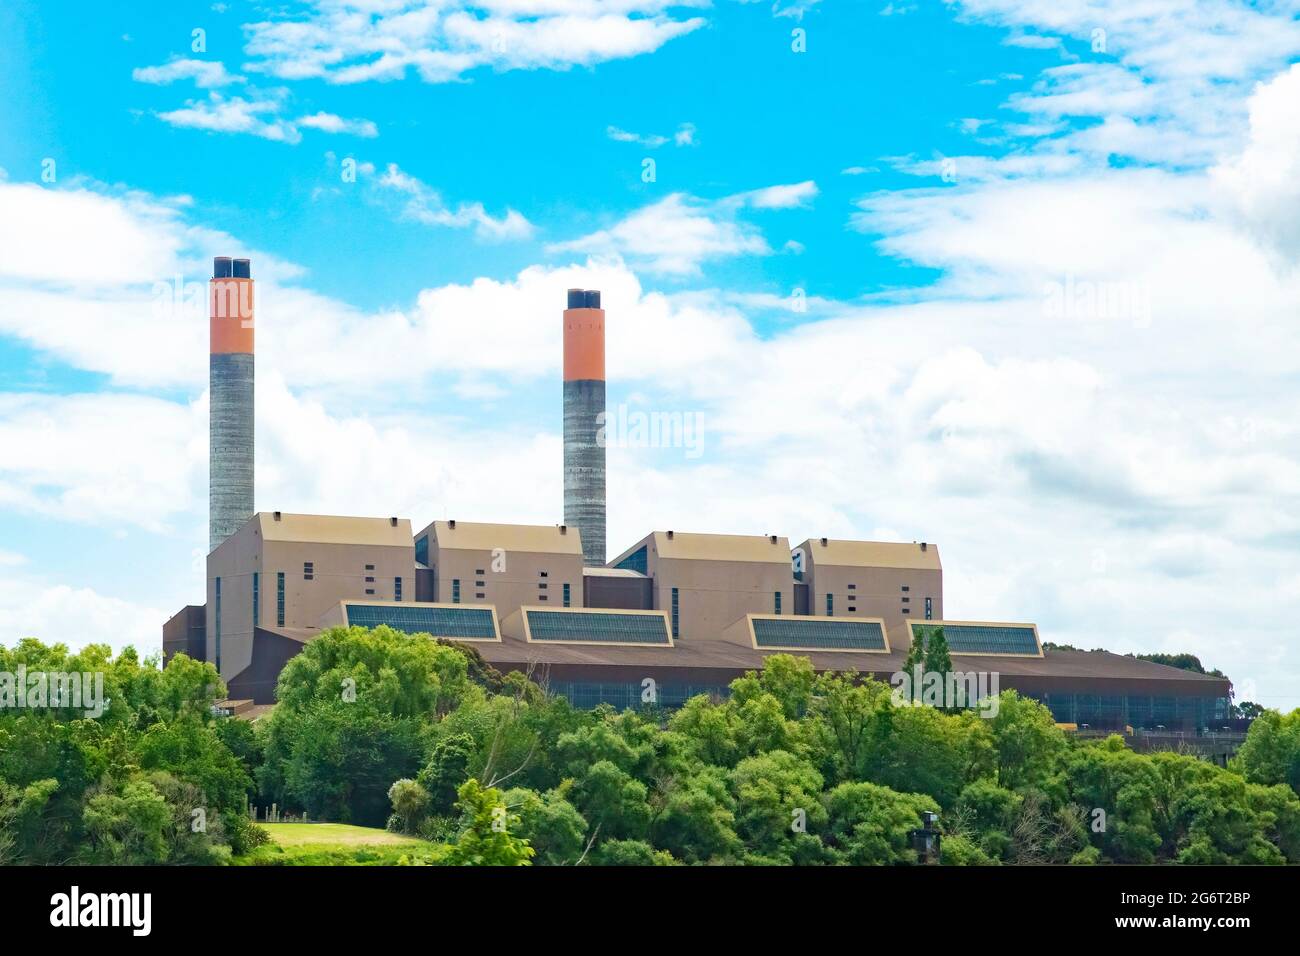 Huntly Power Station, das größte thermische Kraftwerk in Neuseeland, das mit Kohle und Gas betrieben wird. Aufgenommen vom Waikato River, Huntly, Neuseeland o Stockfoto